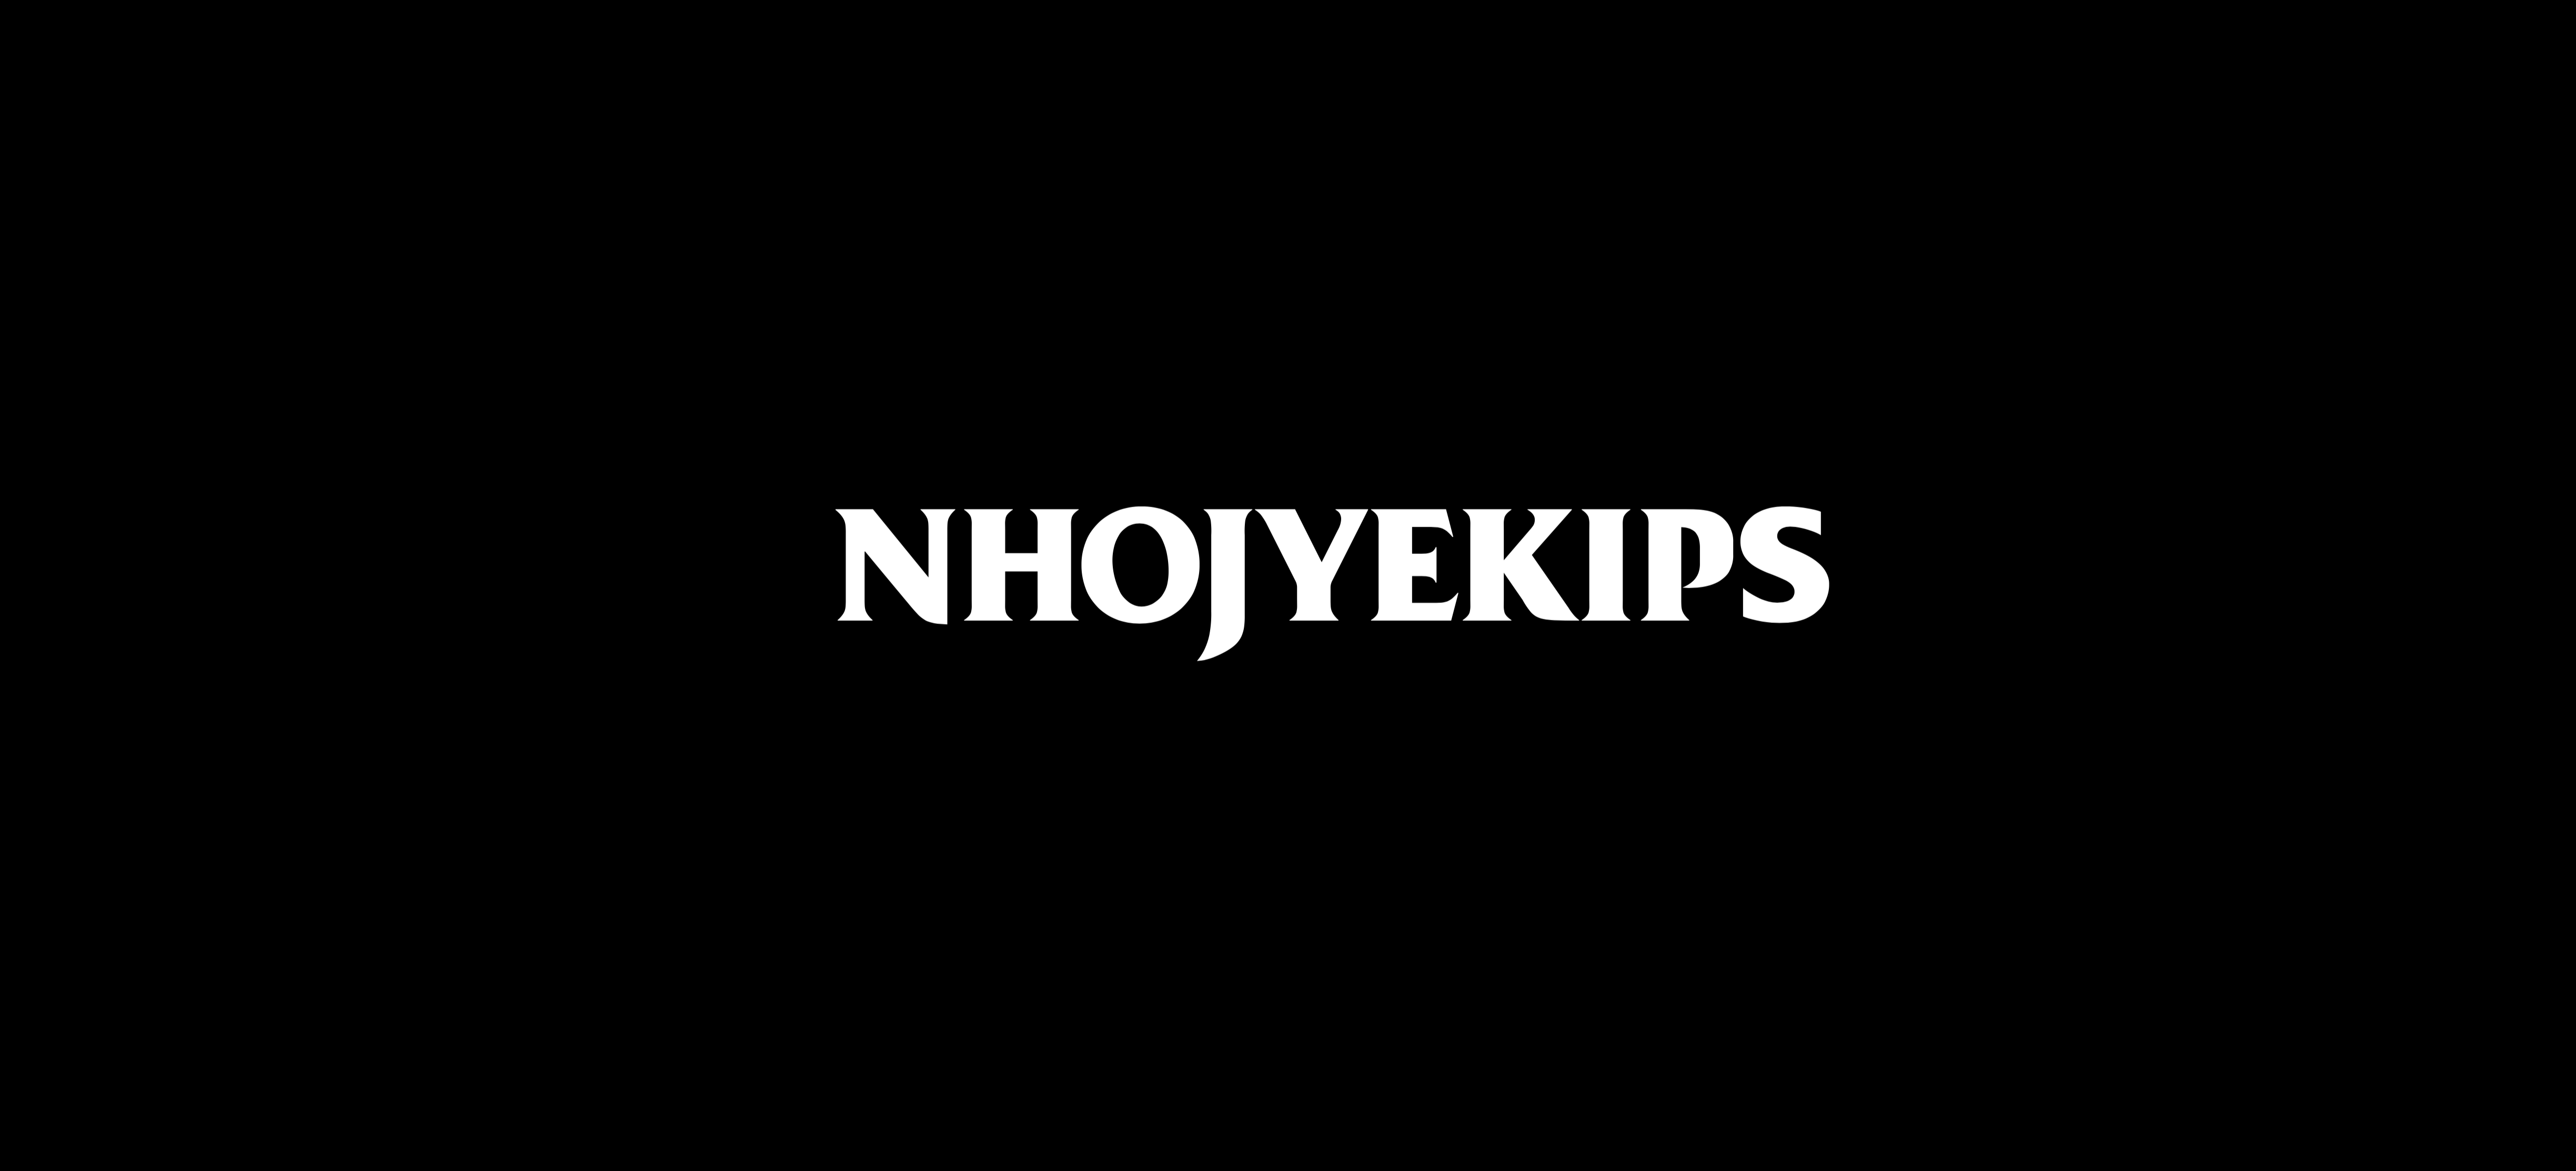 ゼロからアウトプットまで全てのクリエイティブを補う集団【 NHOJYEKIPS 】が発信する3 days連続デジタルシングルリリース第2弾